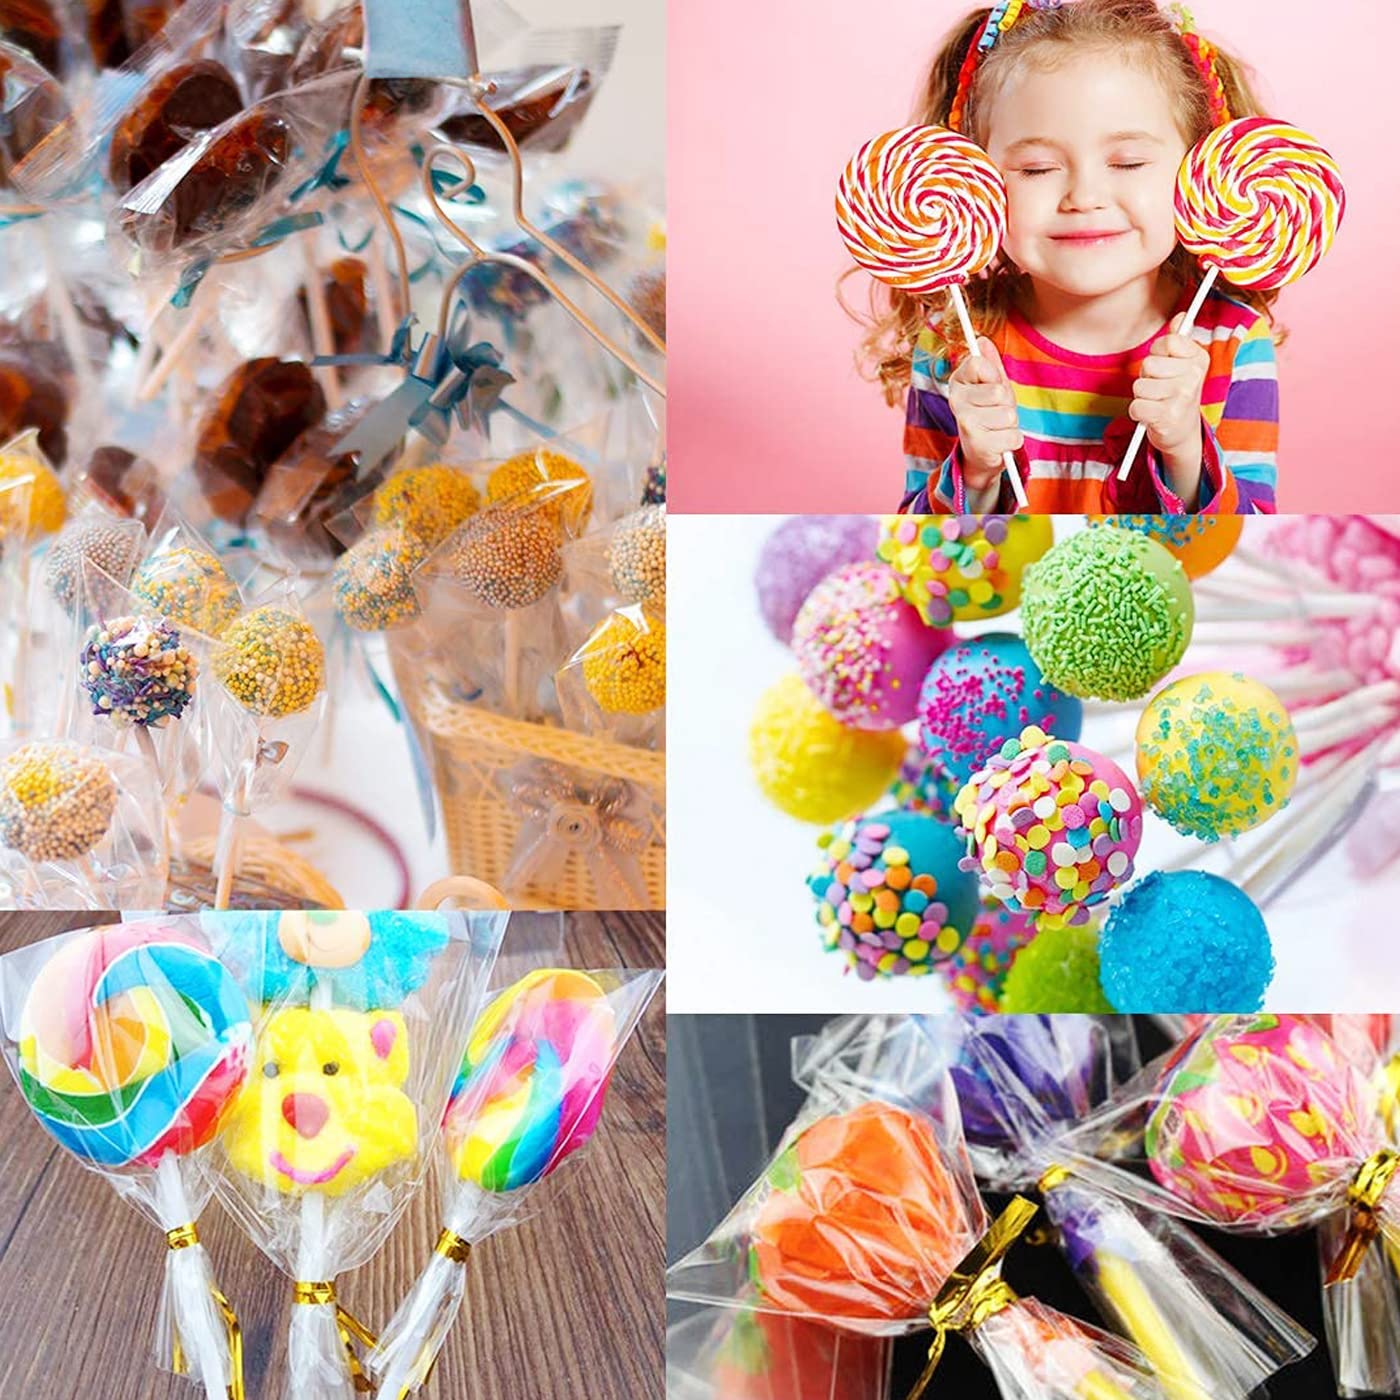 Lollipop Cake Pop Treat Bag Kit, Including 100Pcs Cake Pop Sticks, 100Pcs Parcel Bags, 100Pcs Twist Ties and 1 Cake Pop Mold, Cake Pop Maker Tools for Lollipops, Candies, Chocolates, Cookies